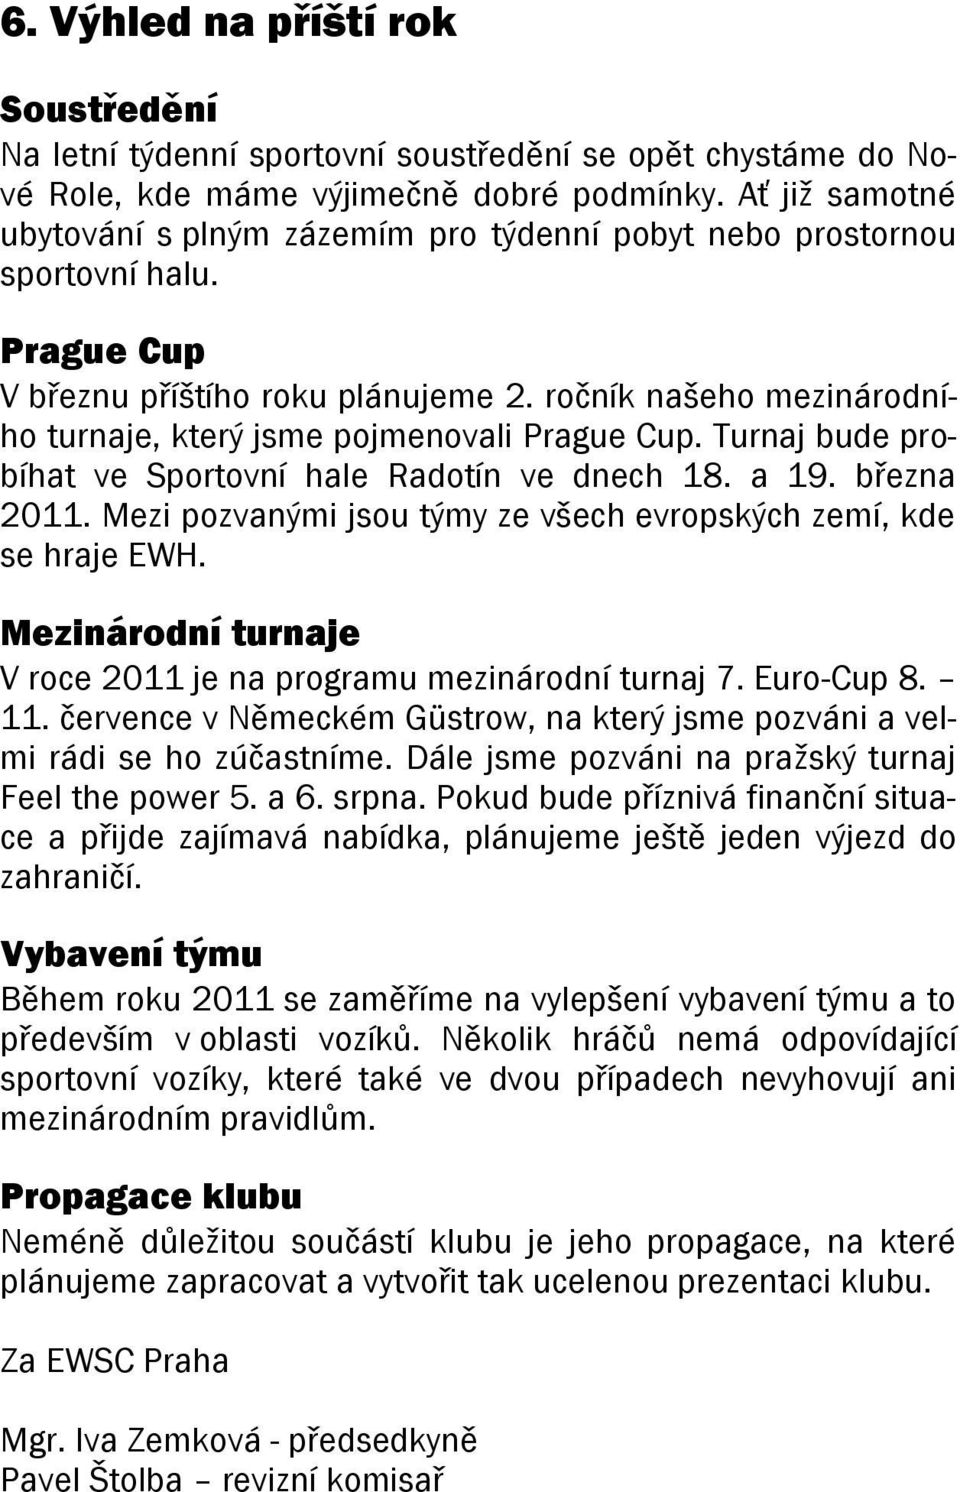 ročník našeho mezinárodního turnaje, který jsme pojmenovali Prague Cup. Turnaj bude probíhat ve Sportovní hale Radotín ve dnech 18. a 19. března 2011.